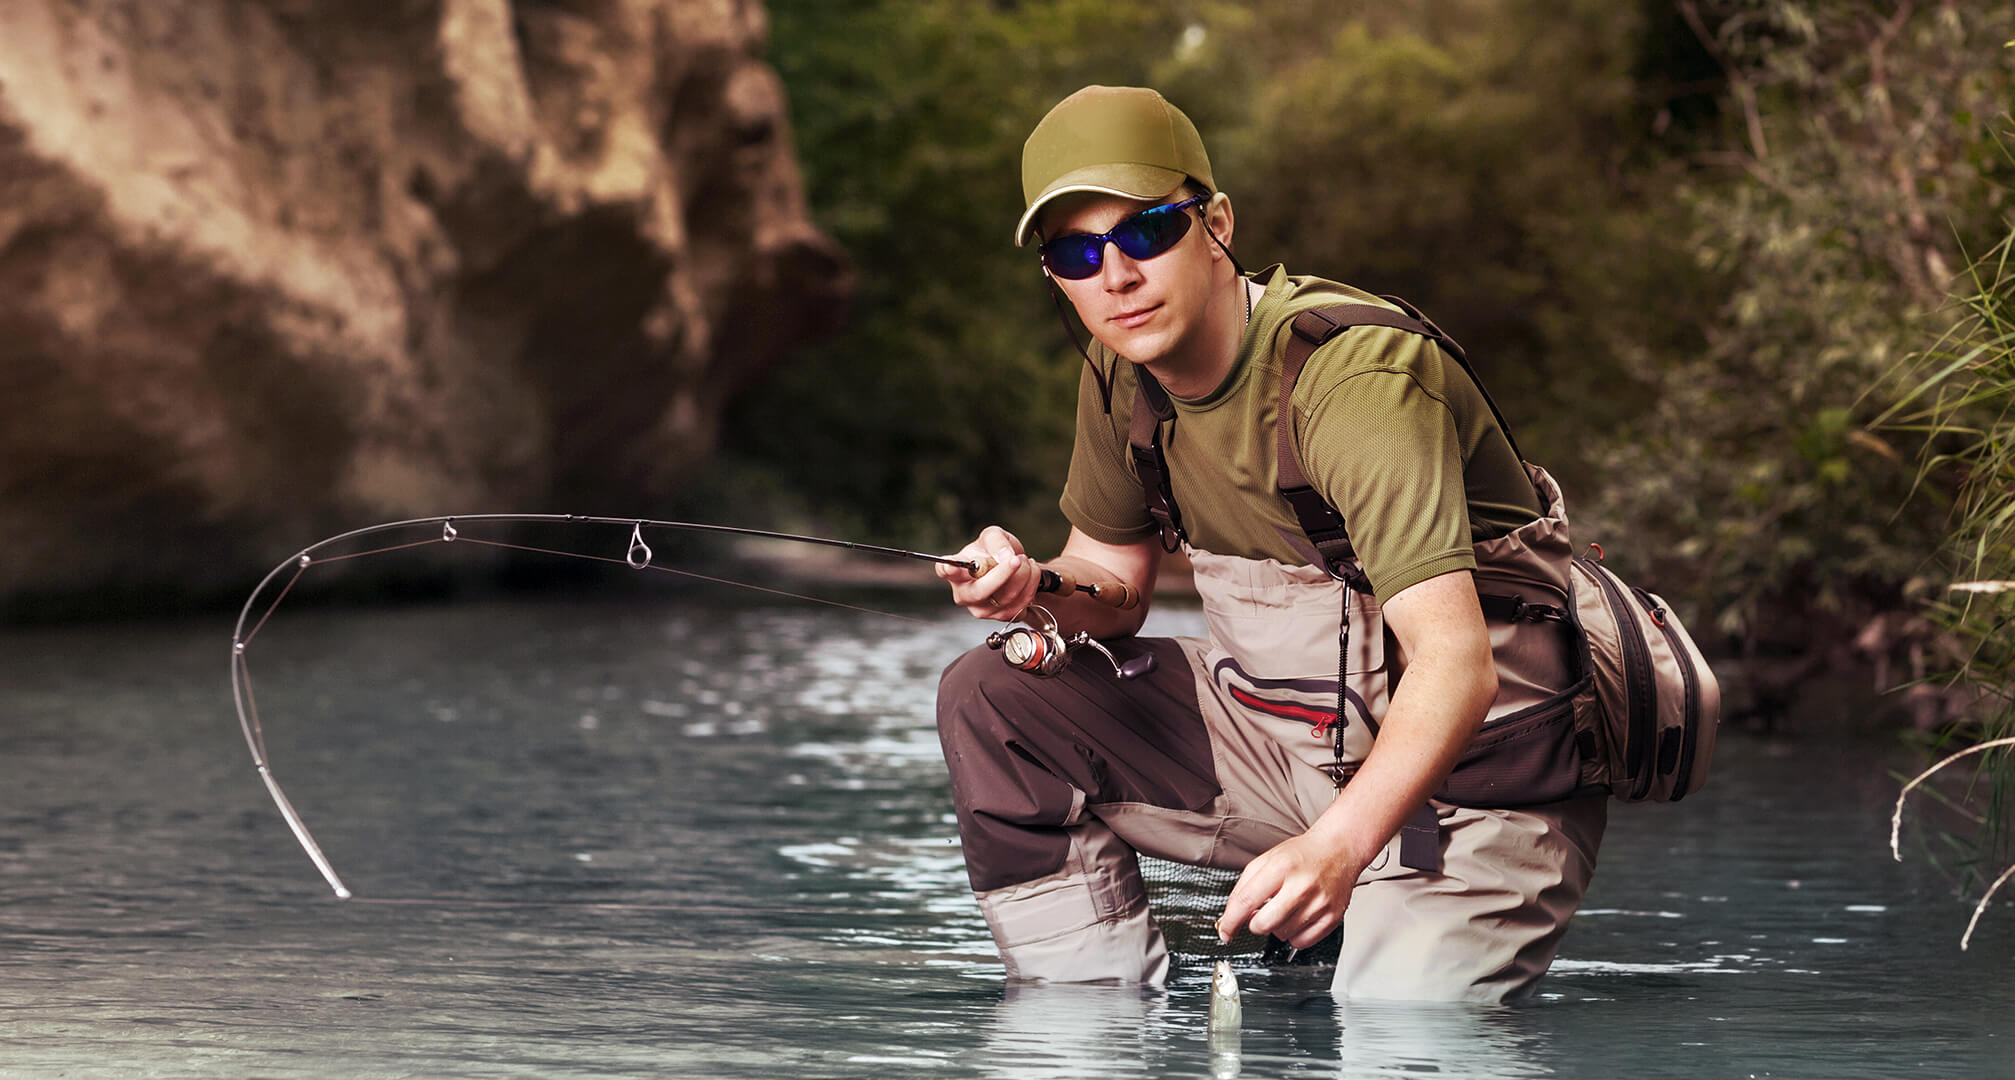 pescatore inginocchiato in acqua mentre indossa occhiali da sole